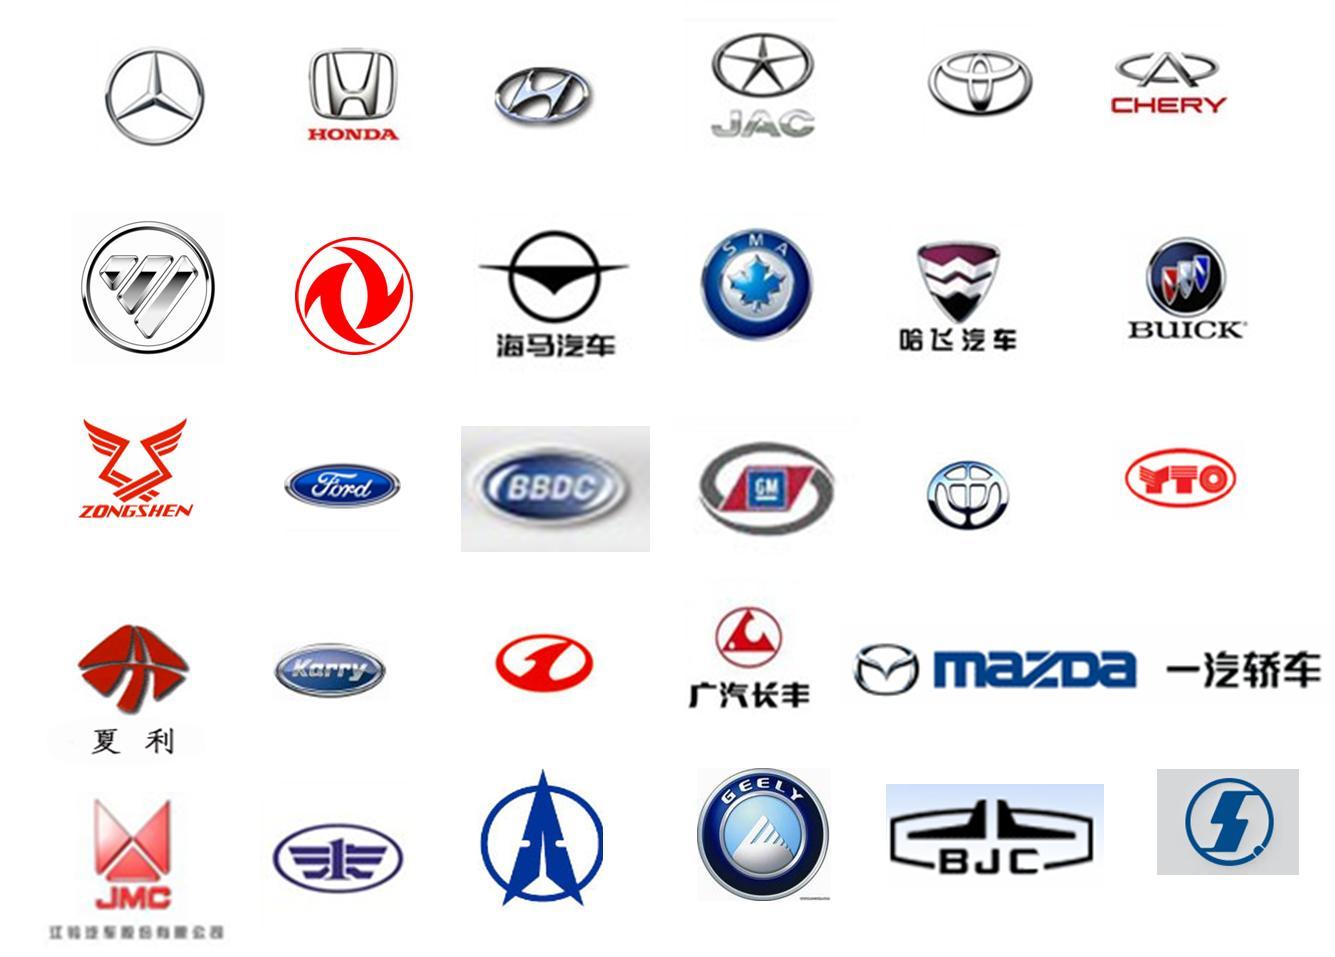 Значки китайских марок авто. Эмблемы марок автомобилей. Значки китайских машин. Китайские автомобили марки. Марки китайских автомобилей со значками.